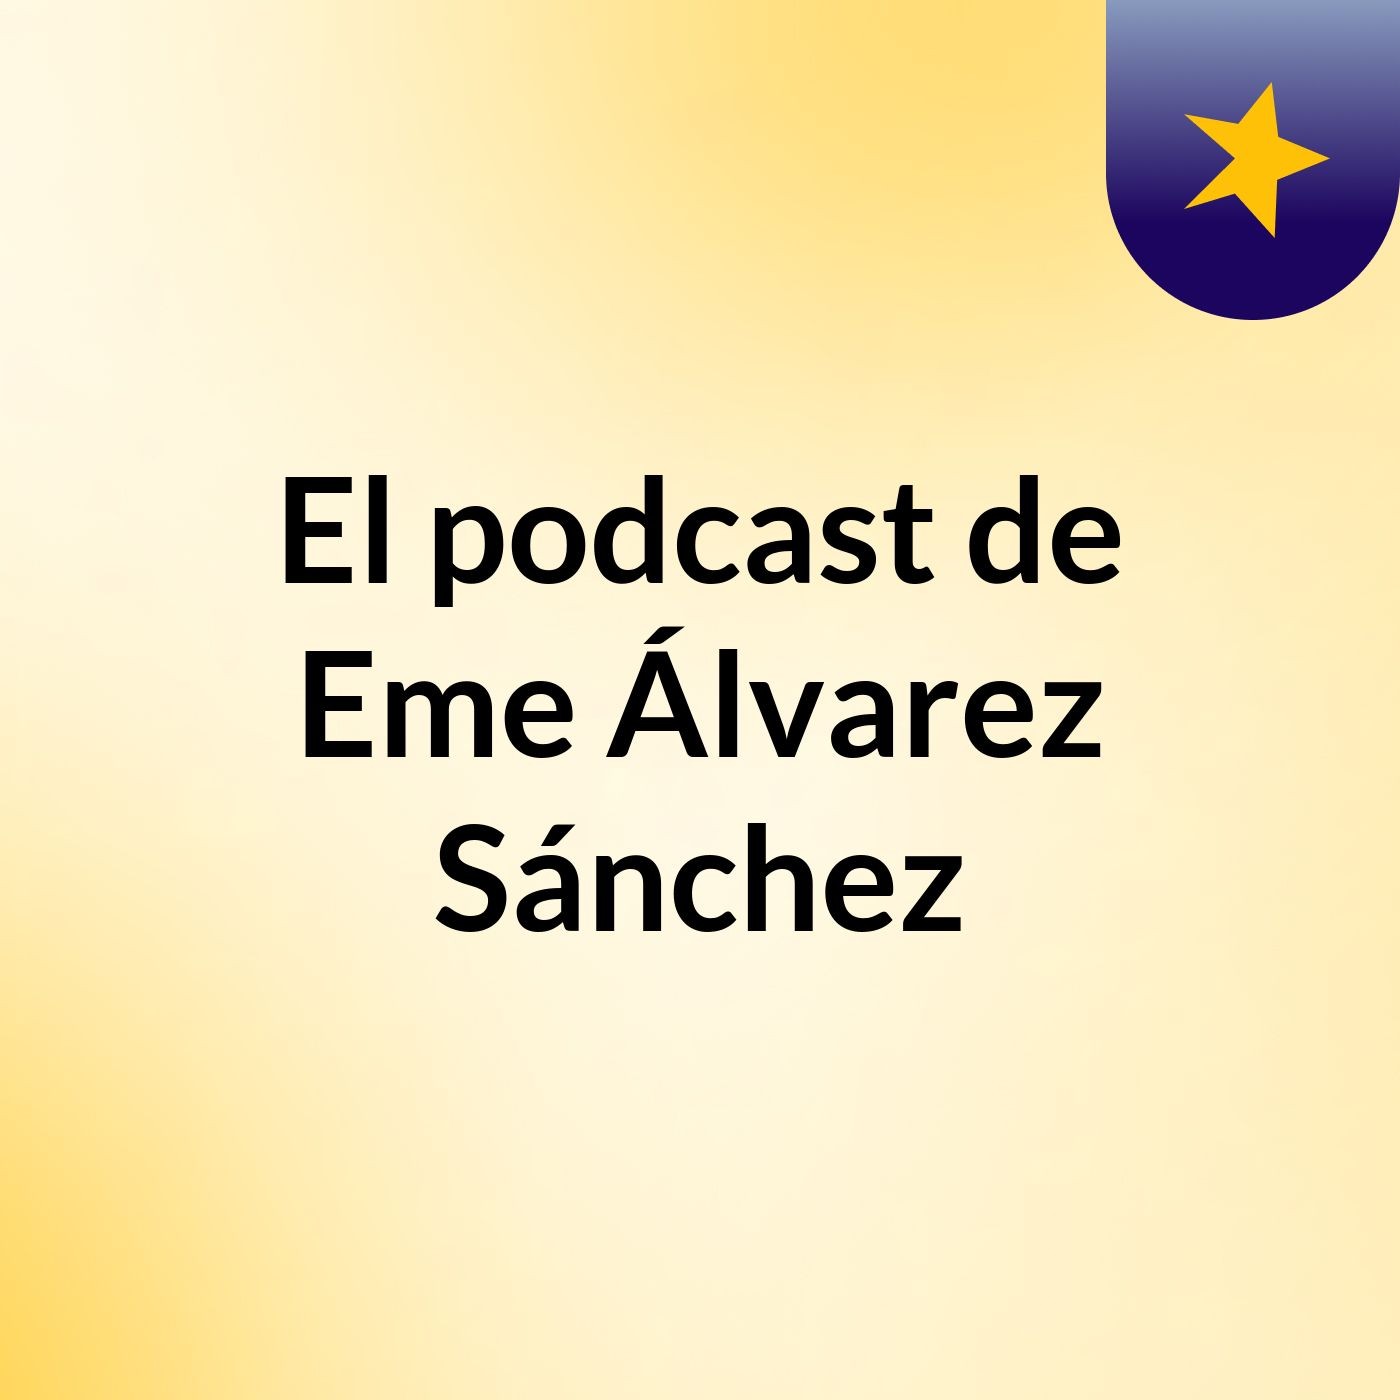 El podcast de Eme Álvarez Sánchez